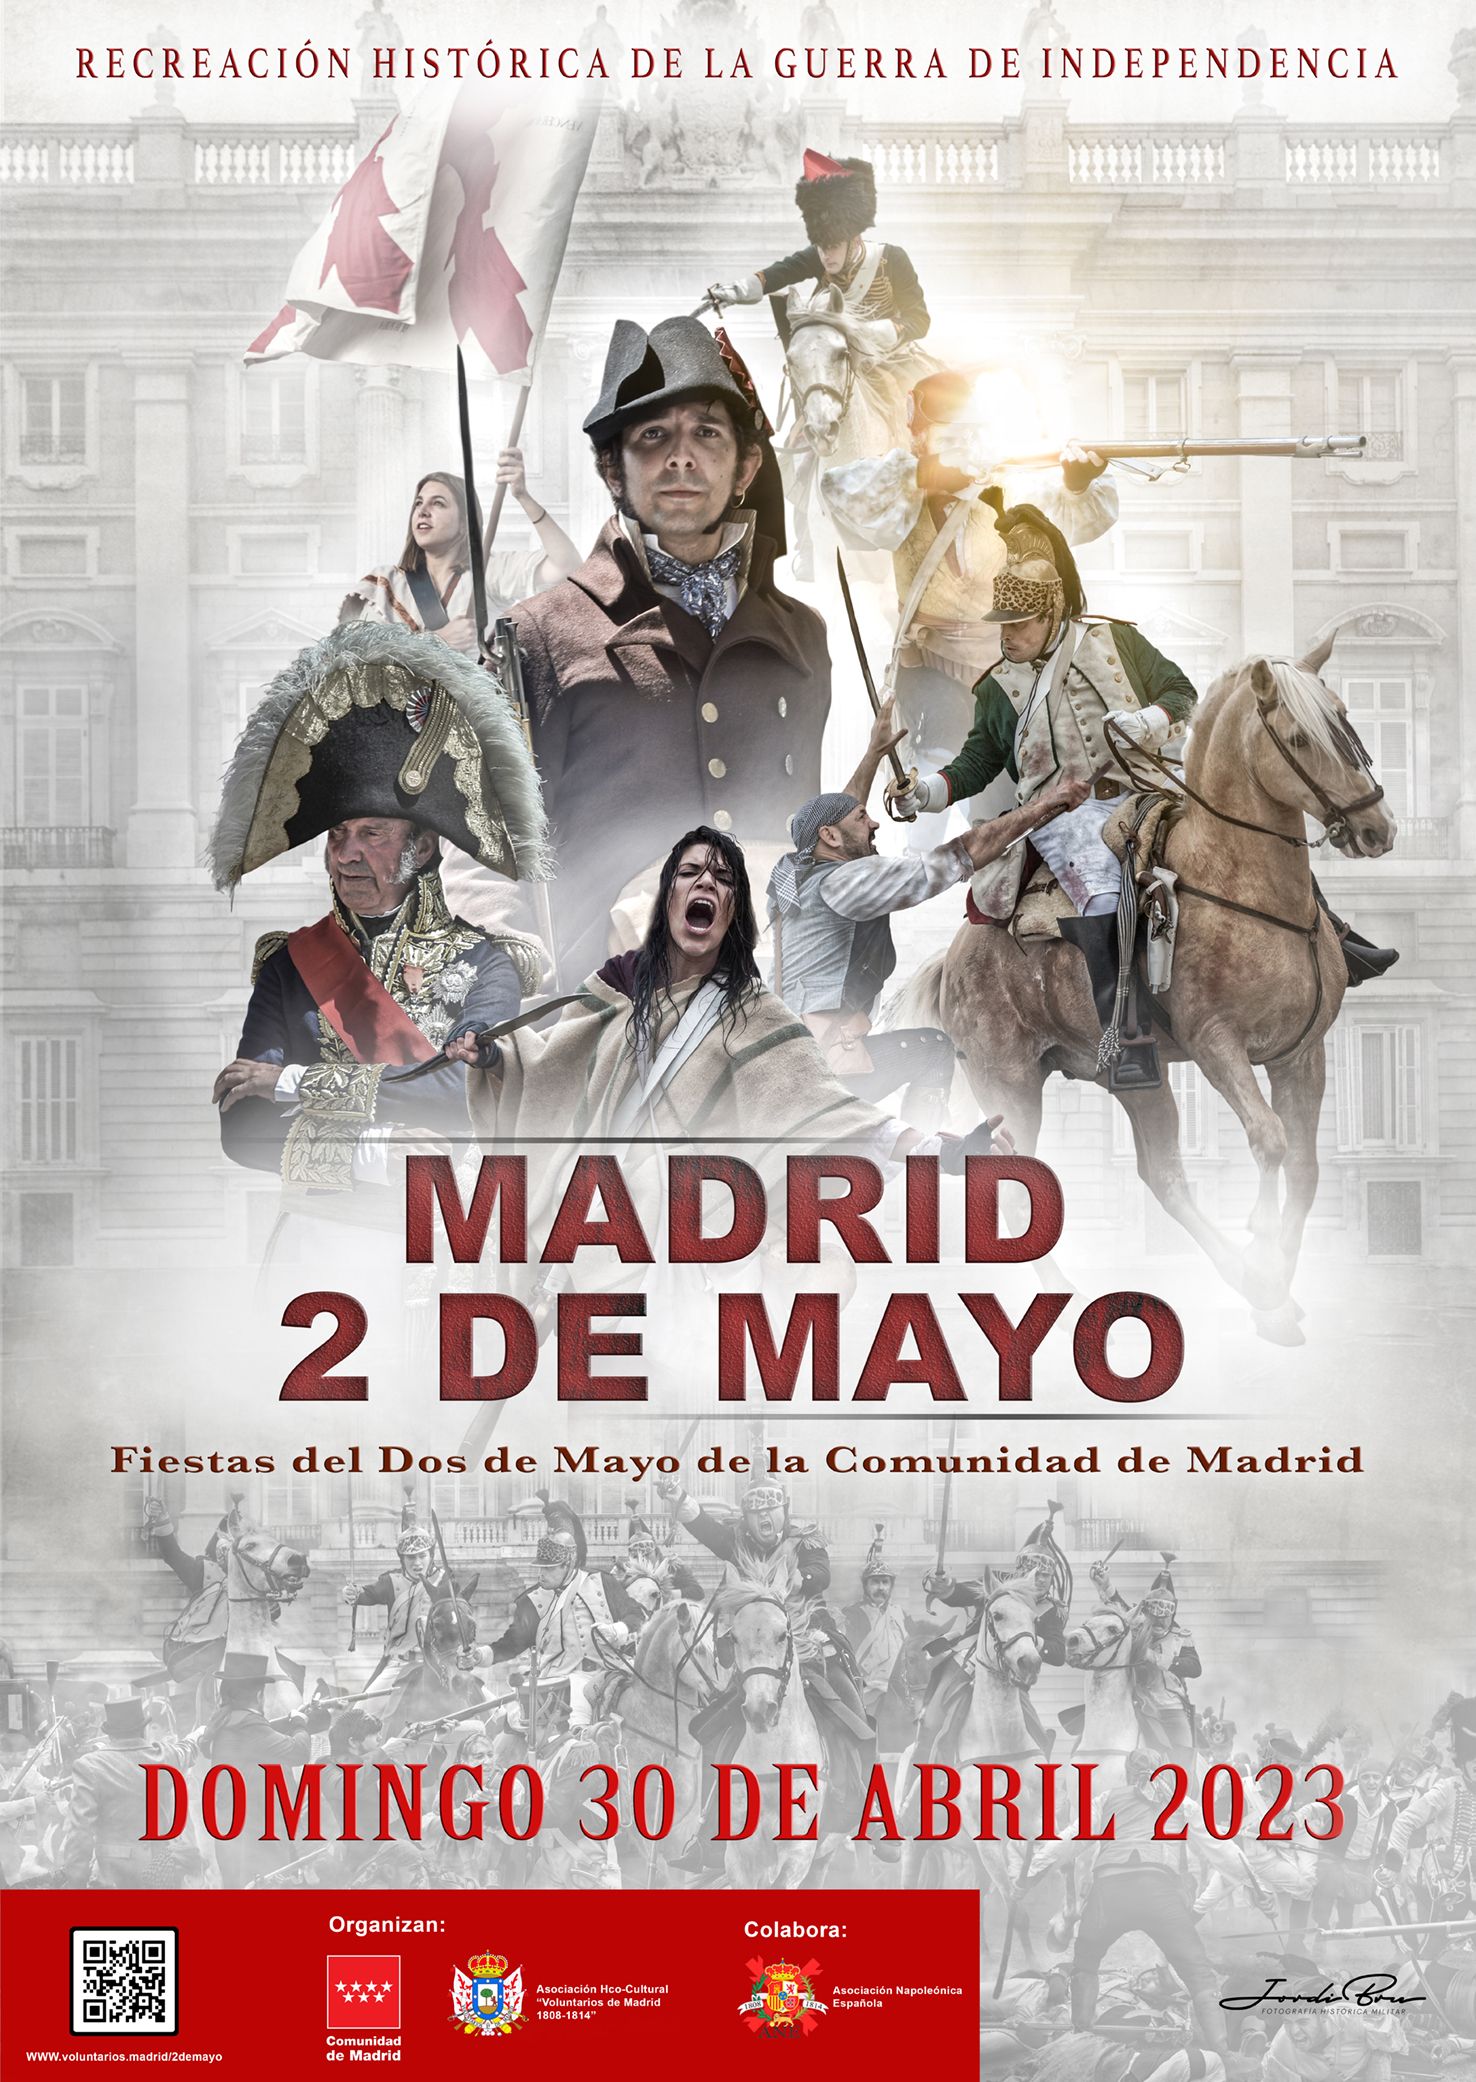 Madrid celebra el 2 de Mayo con una amplia programación de conciertos, danza, teatro y folclore